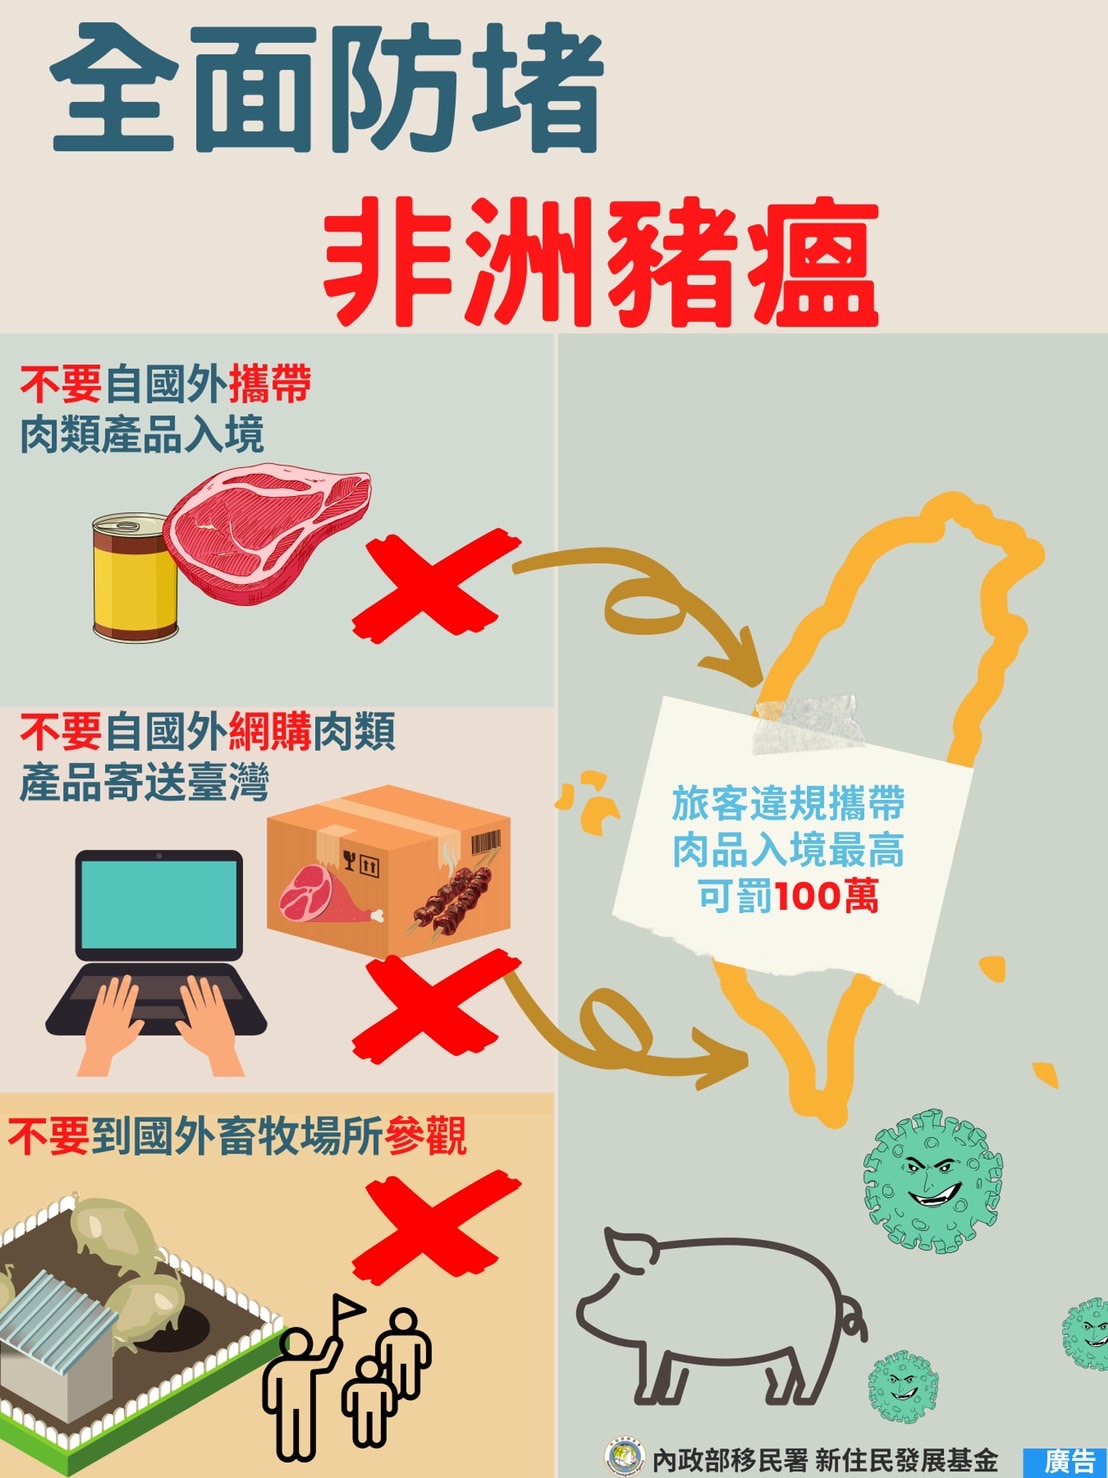 Không mang các sản phẩm thịt vào Đài Loan, tránh vi phạm pháp luật và gây tổn hại cho ngành chăn nuôi lợn của Đài Loan. (Nguồn ảnh: Đội Đặc nhiệm của Sở Di dân tại Cao Hùng)